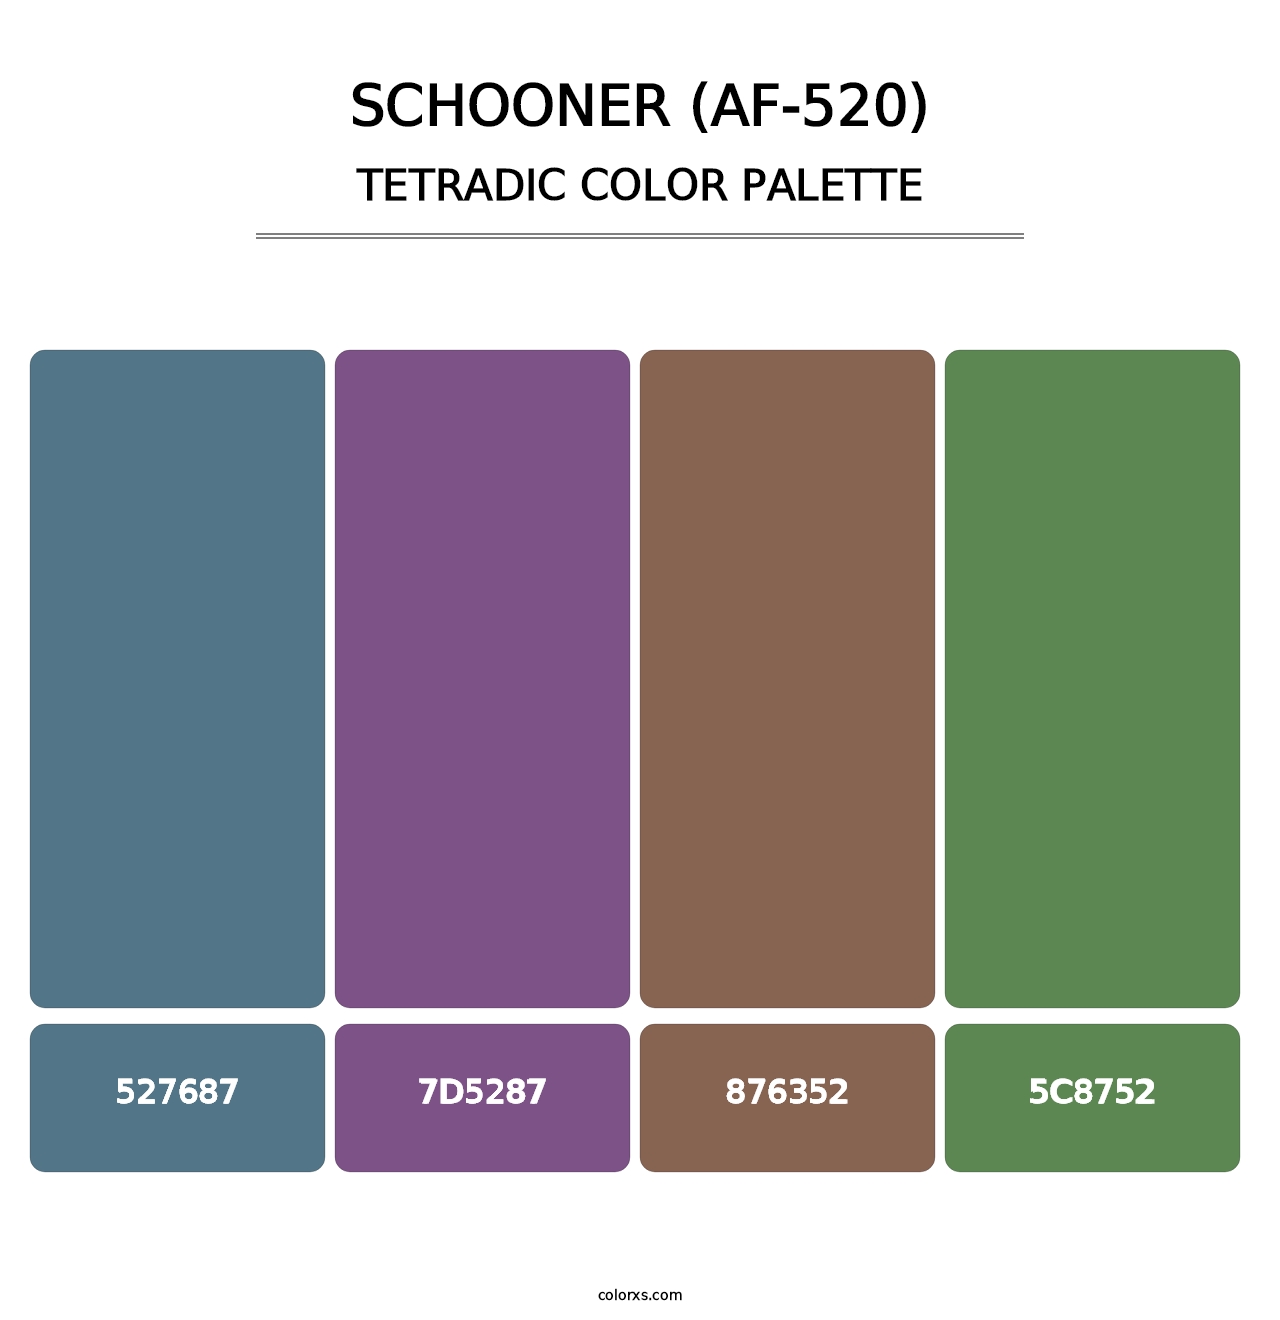 Schooner (AF-520) - Tetradic Color Palette